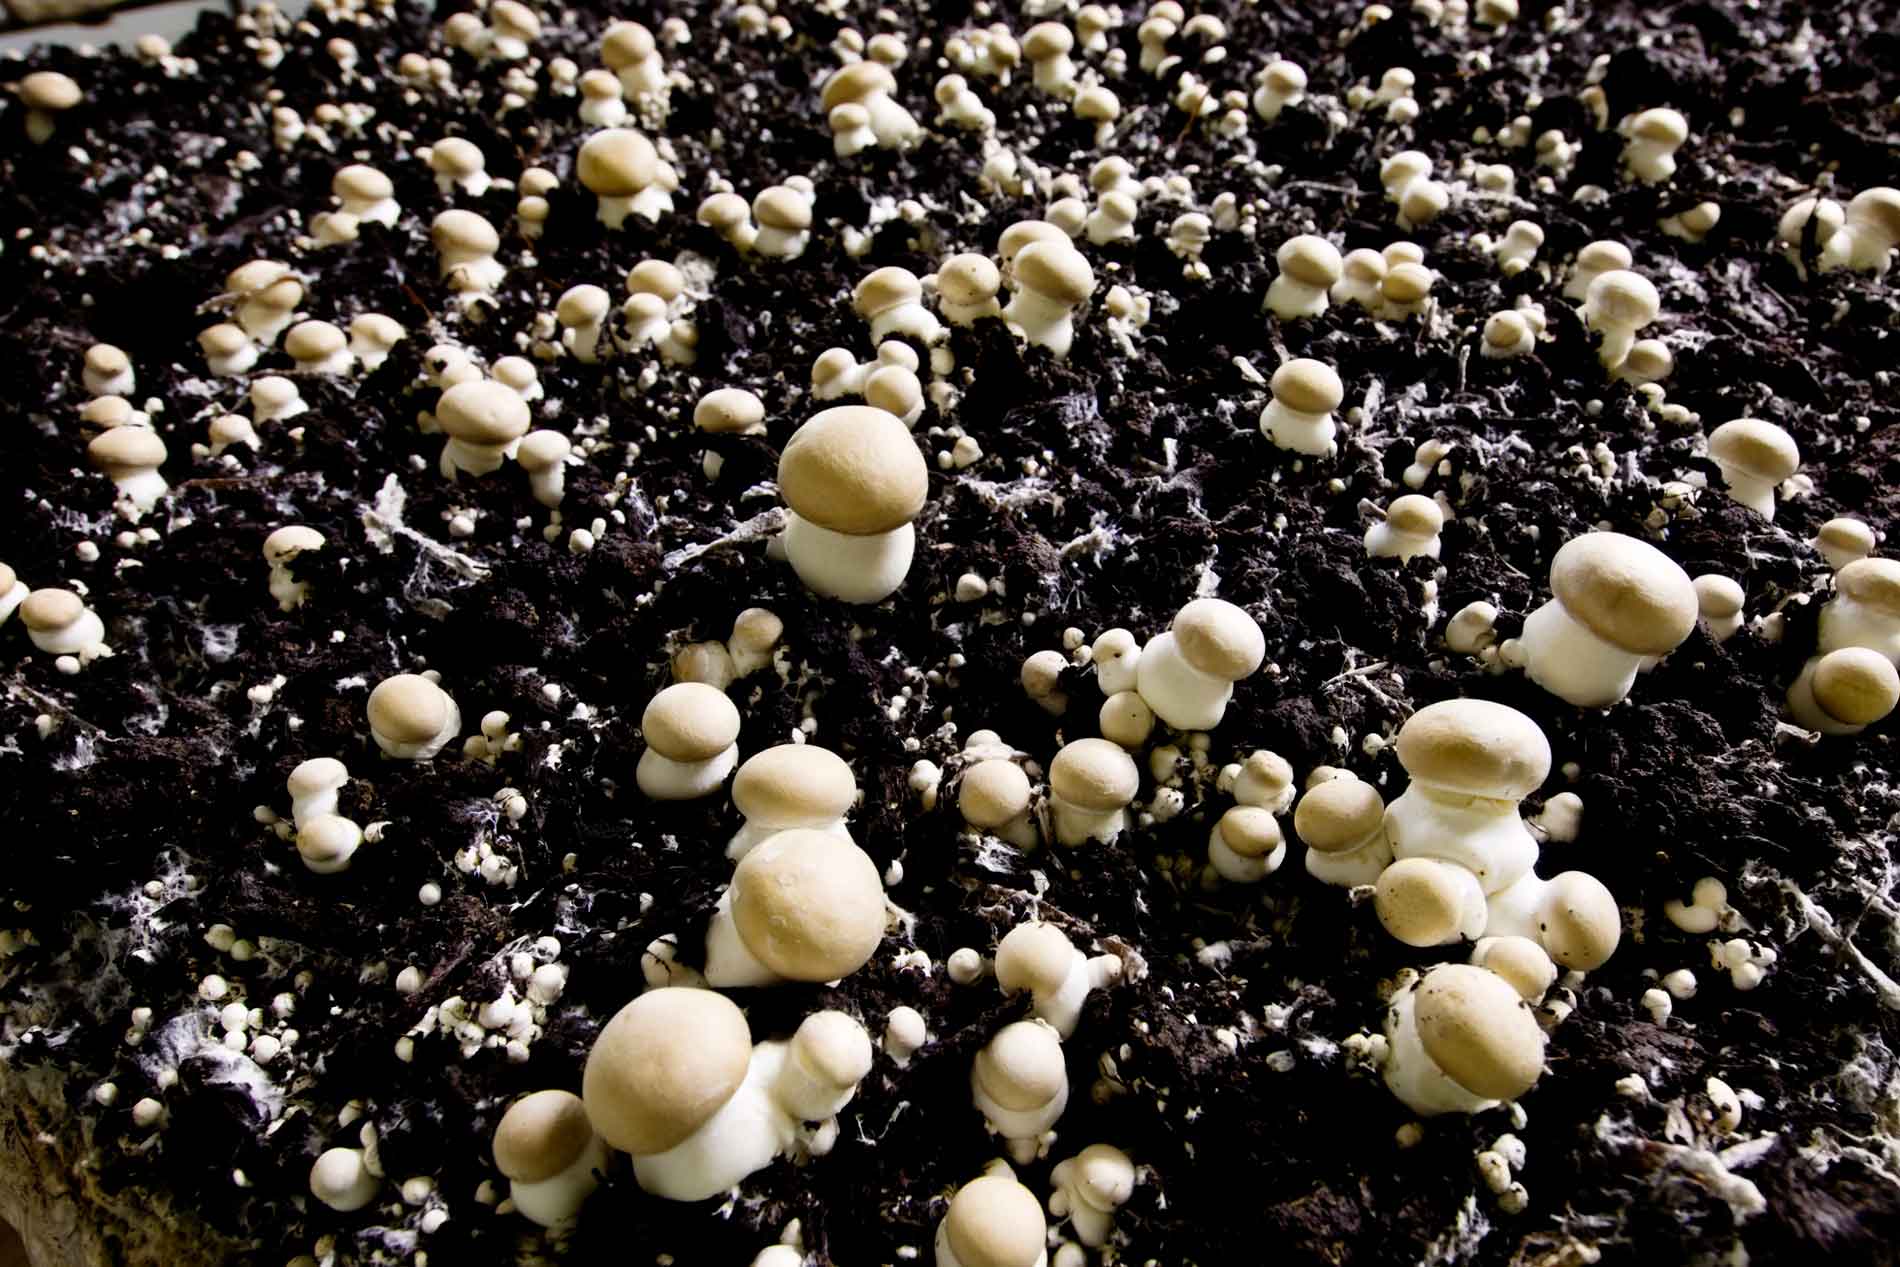 Fungi In The Soil